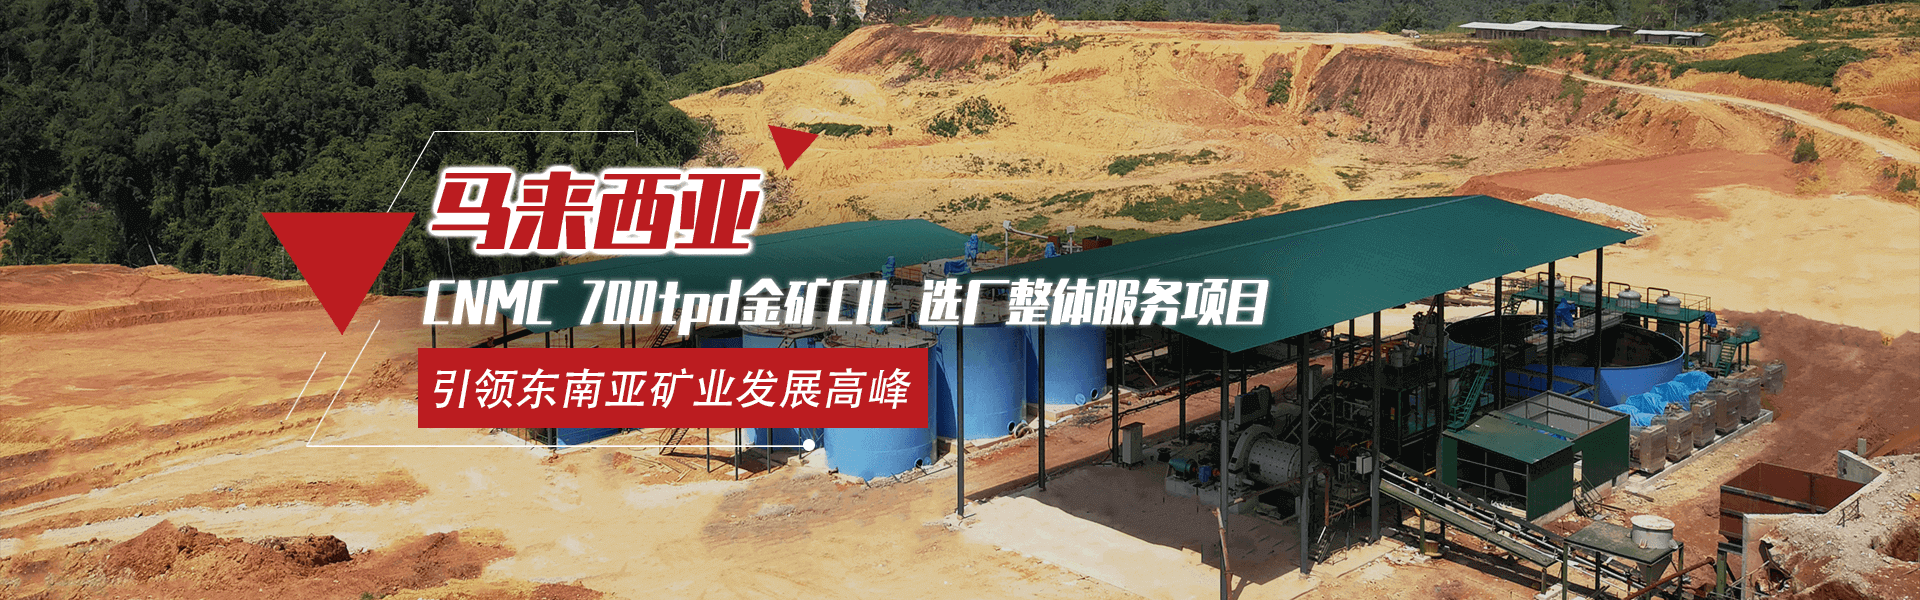 马来西亚CNMC 500t/d金矿CIL矿业全产业链服务项目